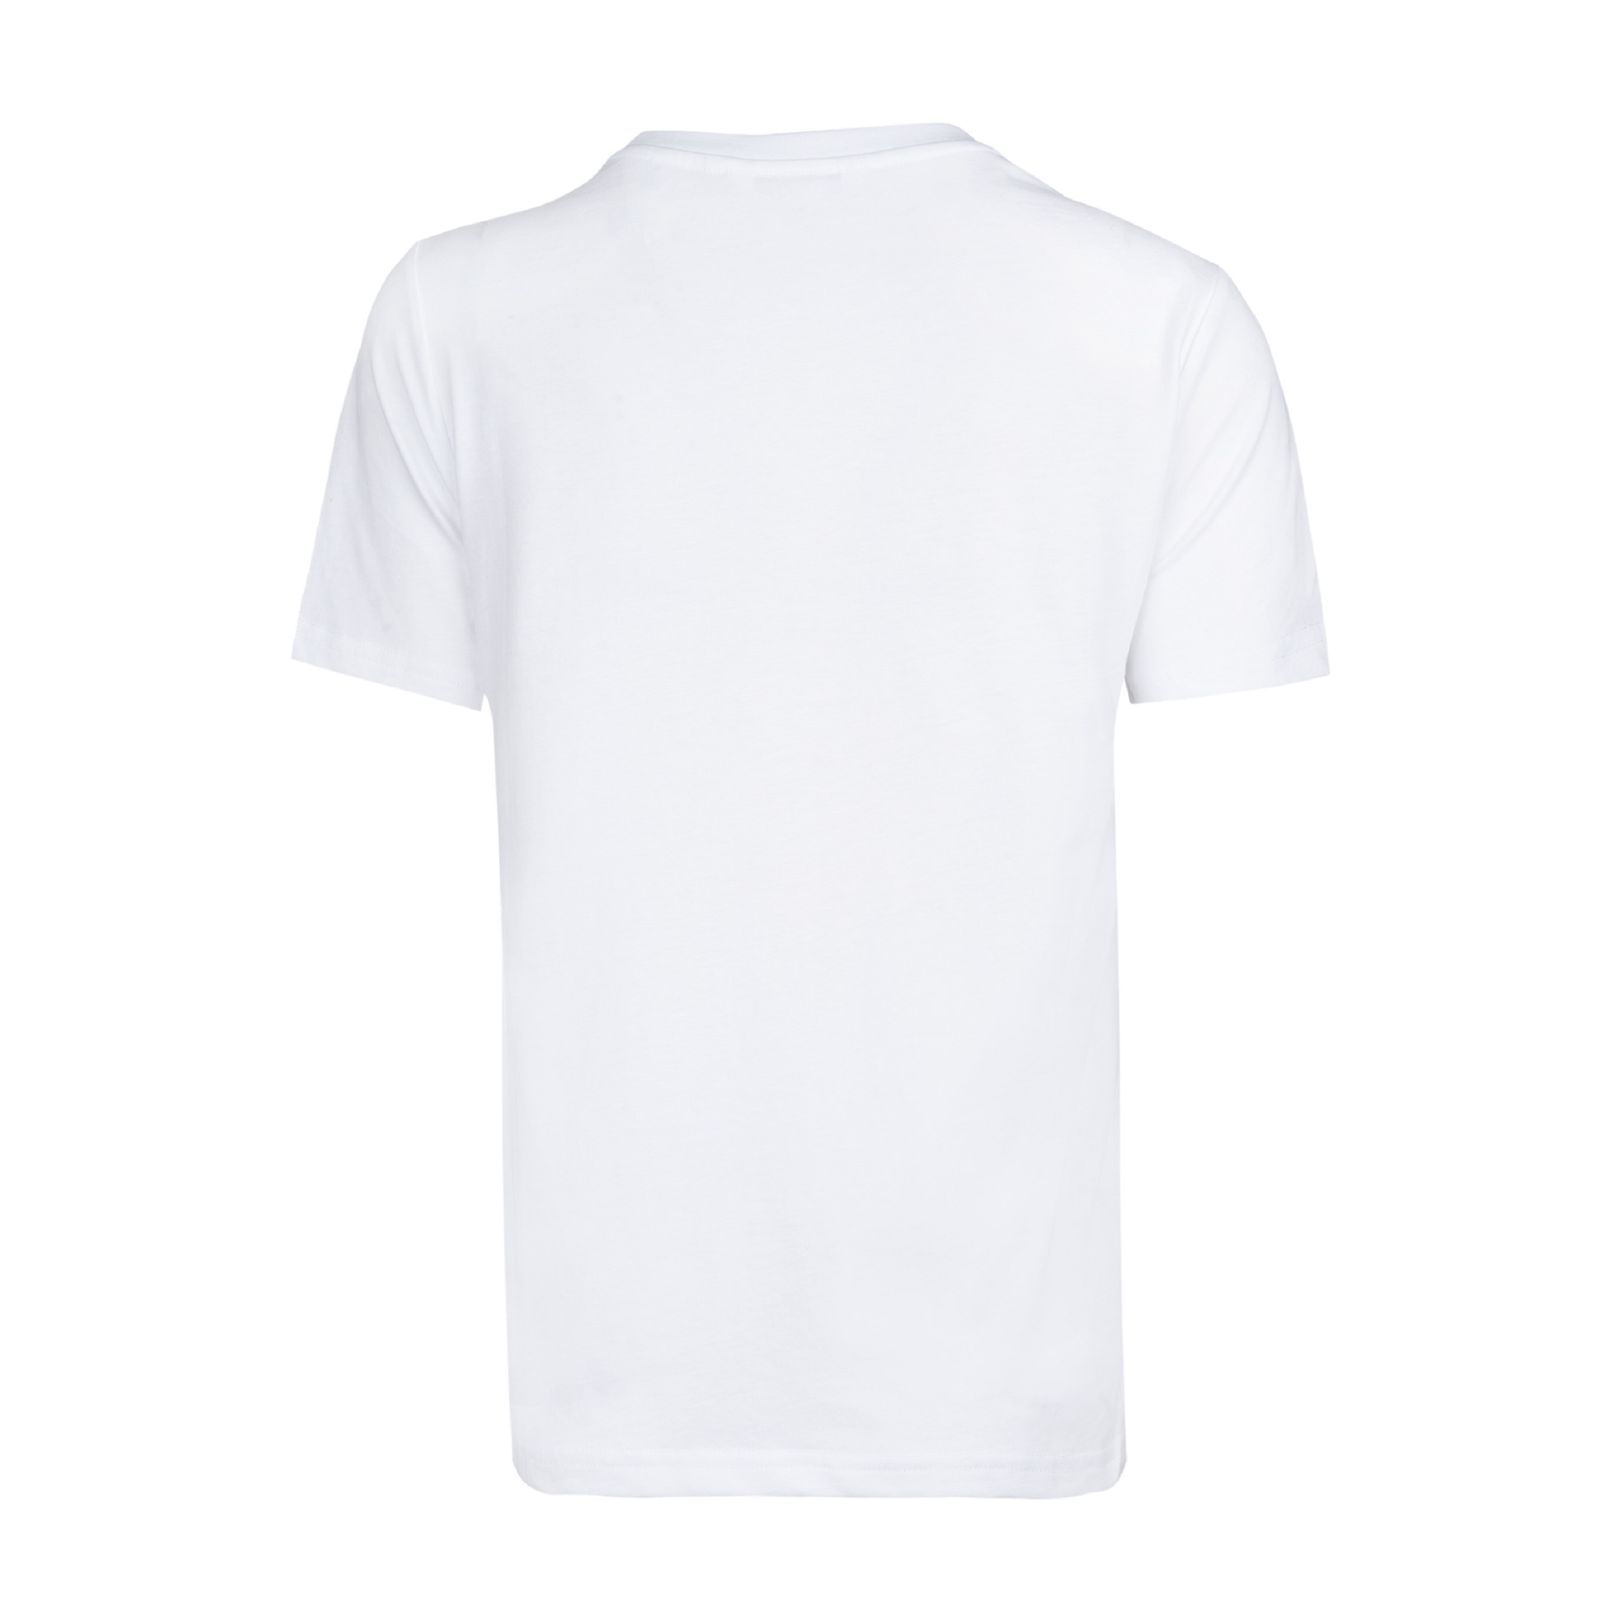 تی شرت آستین کوتاه زنانه جین وست کد 15512 رنگ سفید -  - 2